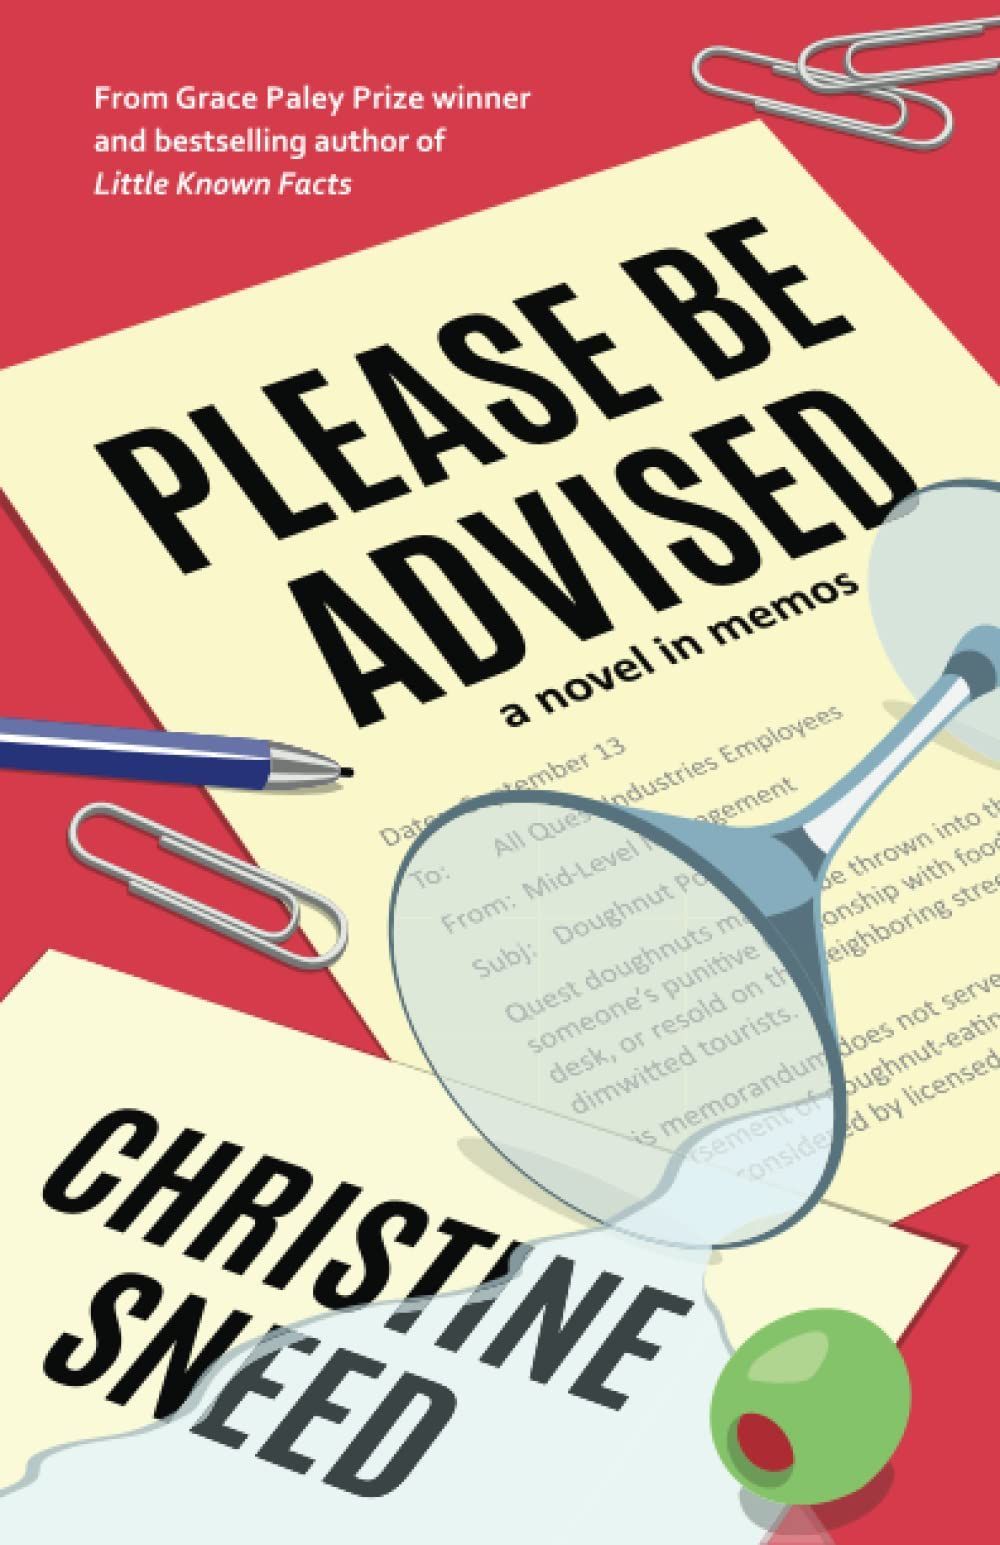 Corporate Culture as Absurdist Metafiction: On Christine Sneed’s “Please Be Advised”